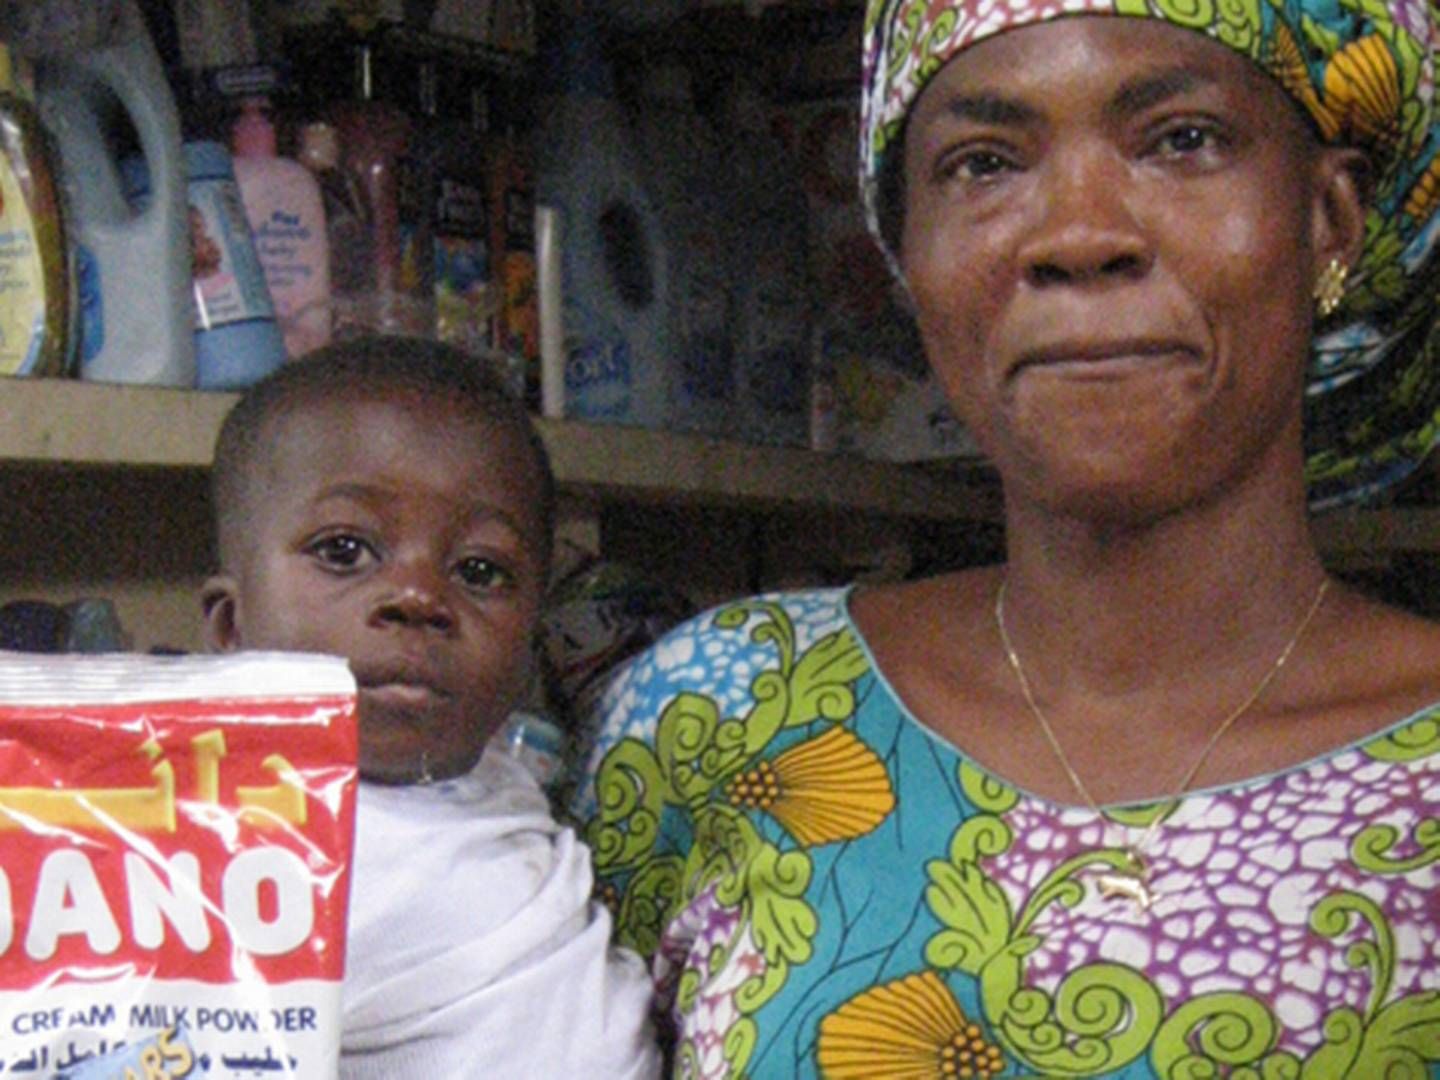 Efter etableringen af joint venturet med Tolaram er Arla og mælkepulverbrandet Dano nu at finde overalt i Nigeria. Det har medført øget produktion. | Foto: ARLA ARKIV